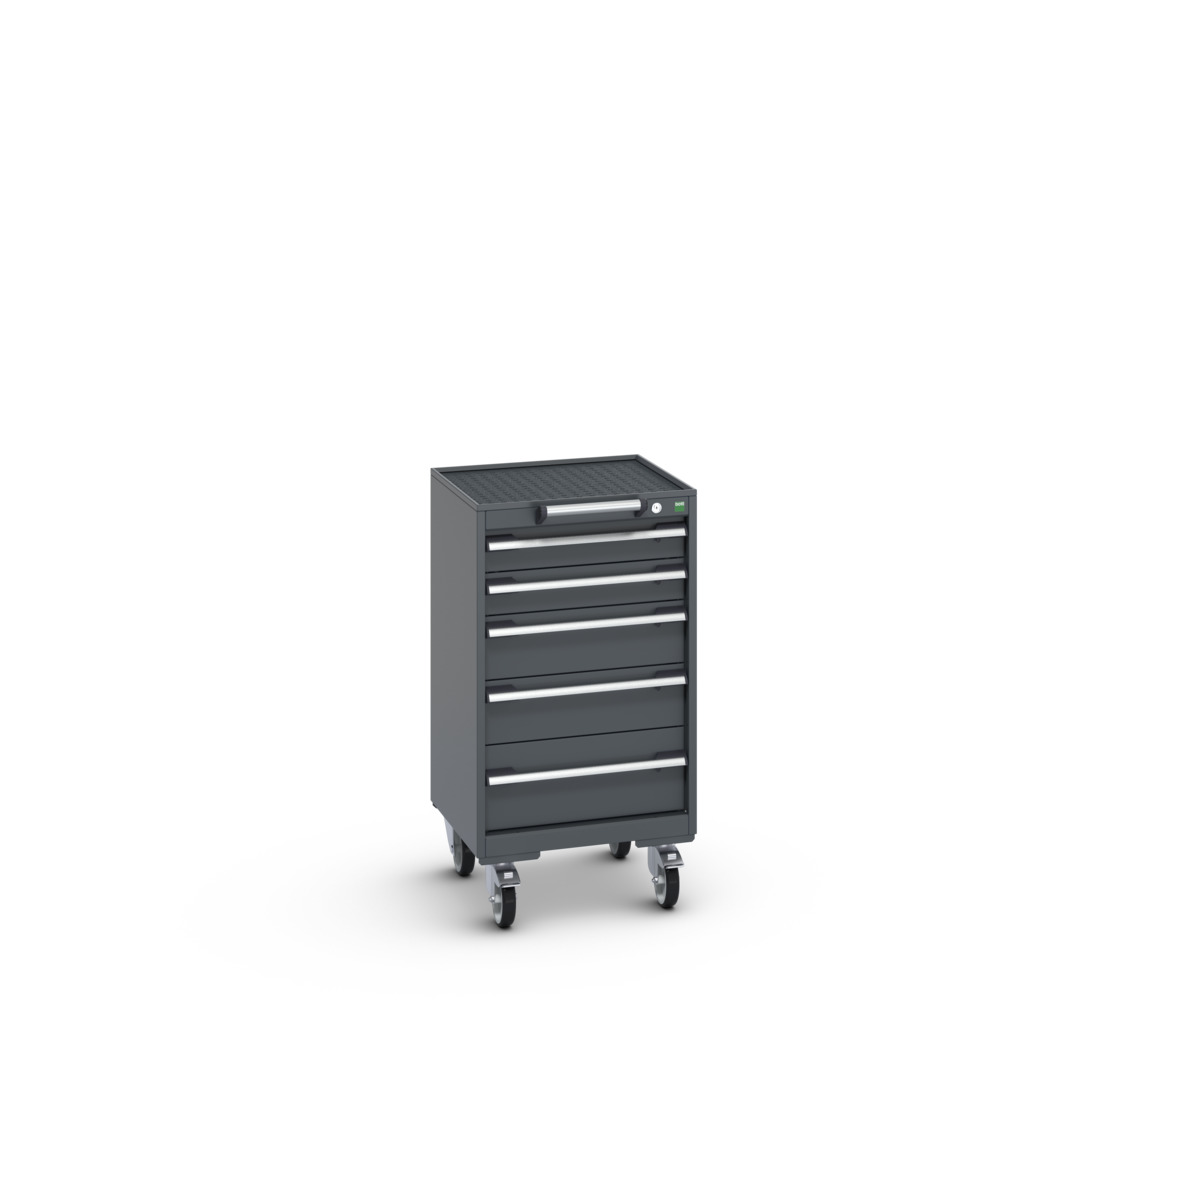 40402019.77V - cubio mobile cabinet